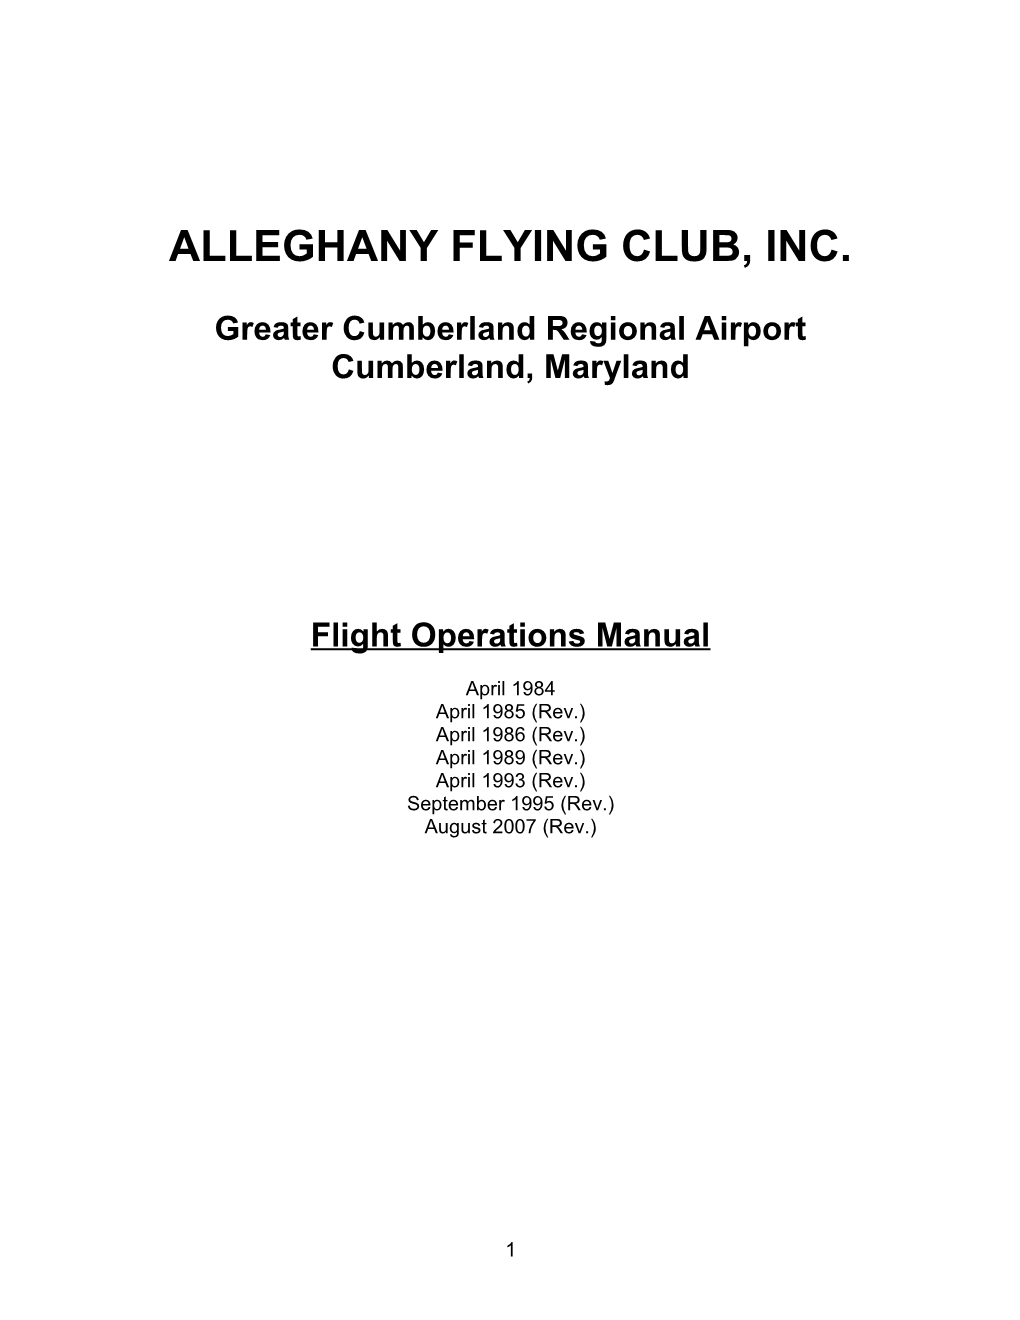 Alleghany Flying Club, Inc